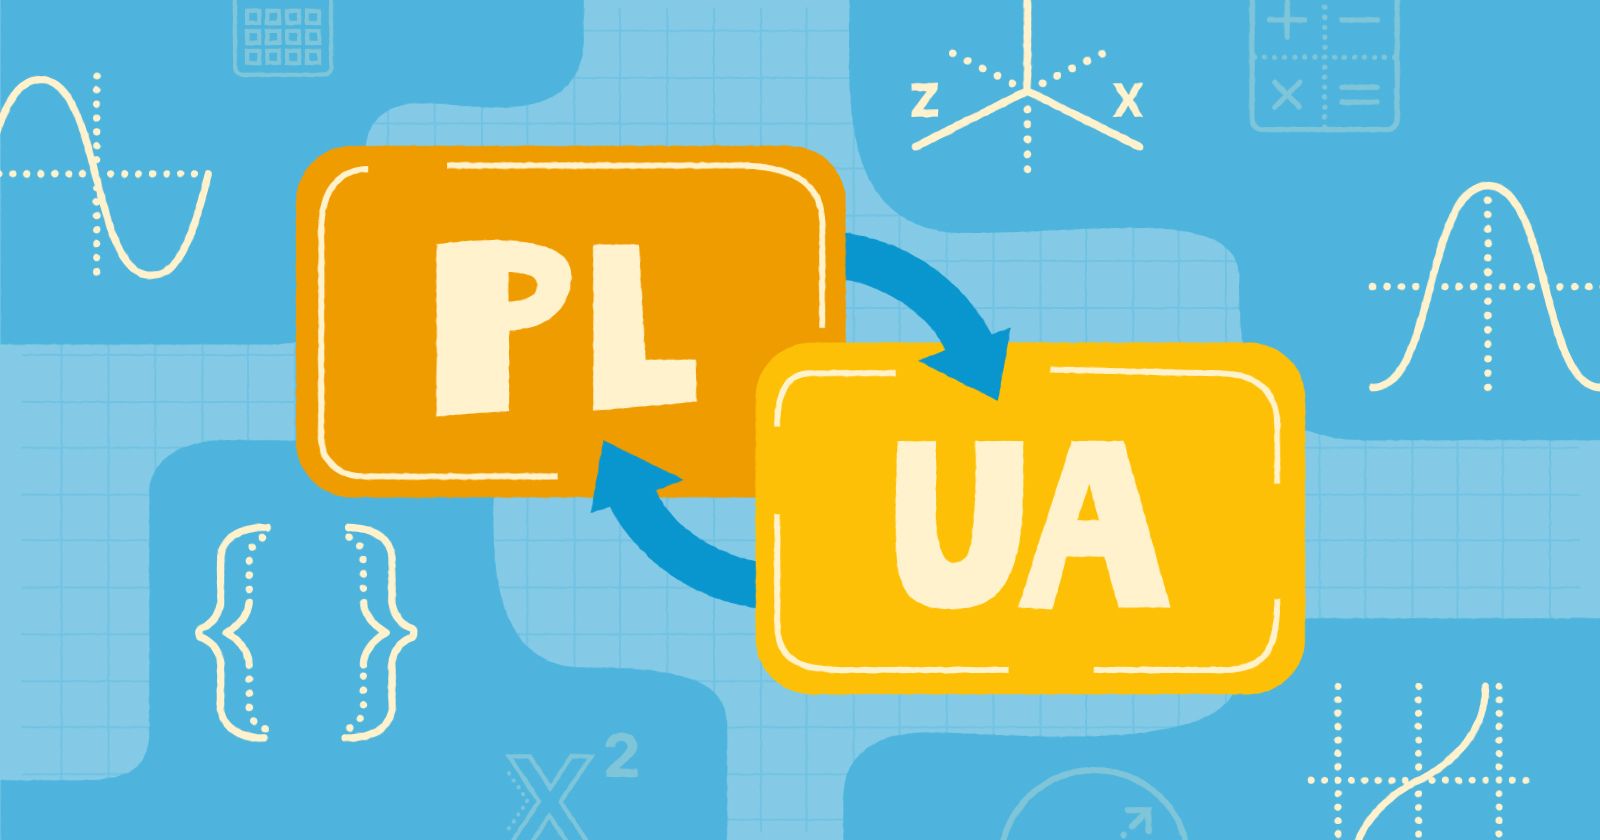  Symbole języków PL i UA ze strzałkami symbolizującymi tłumaczenie słowa z jednego języka na drugi